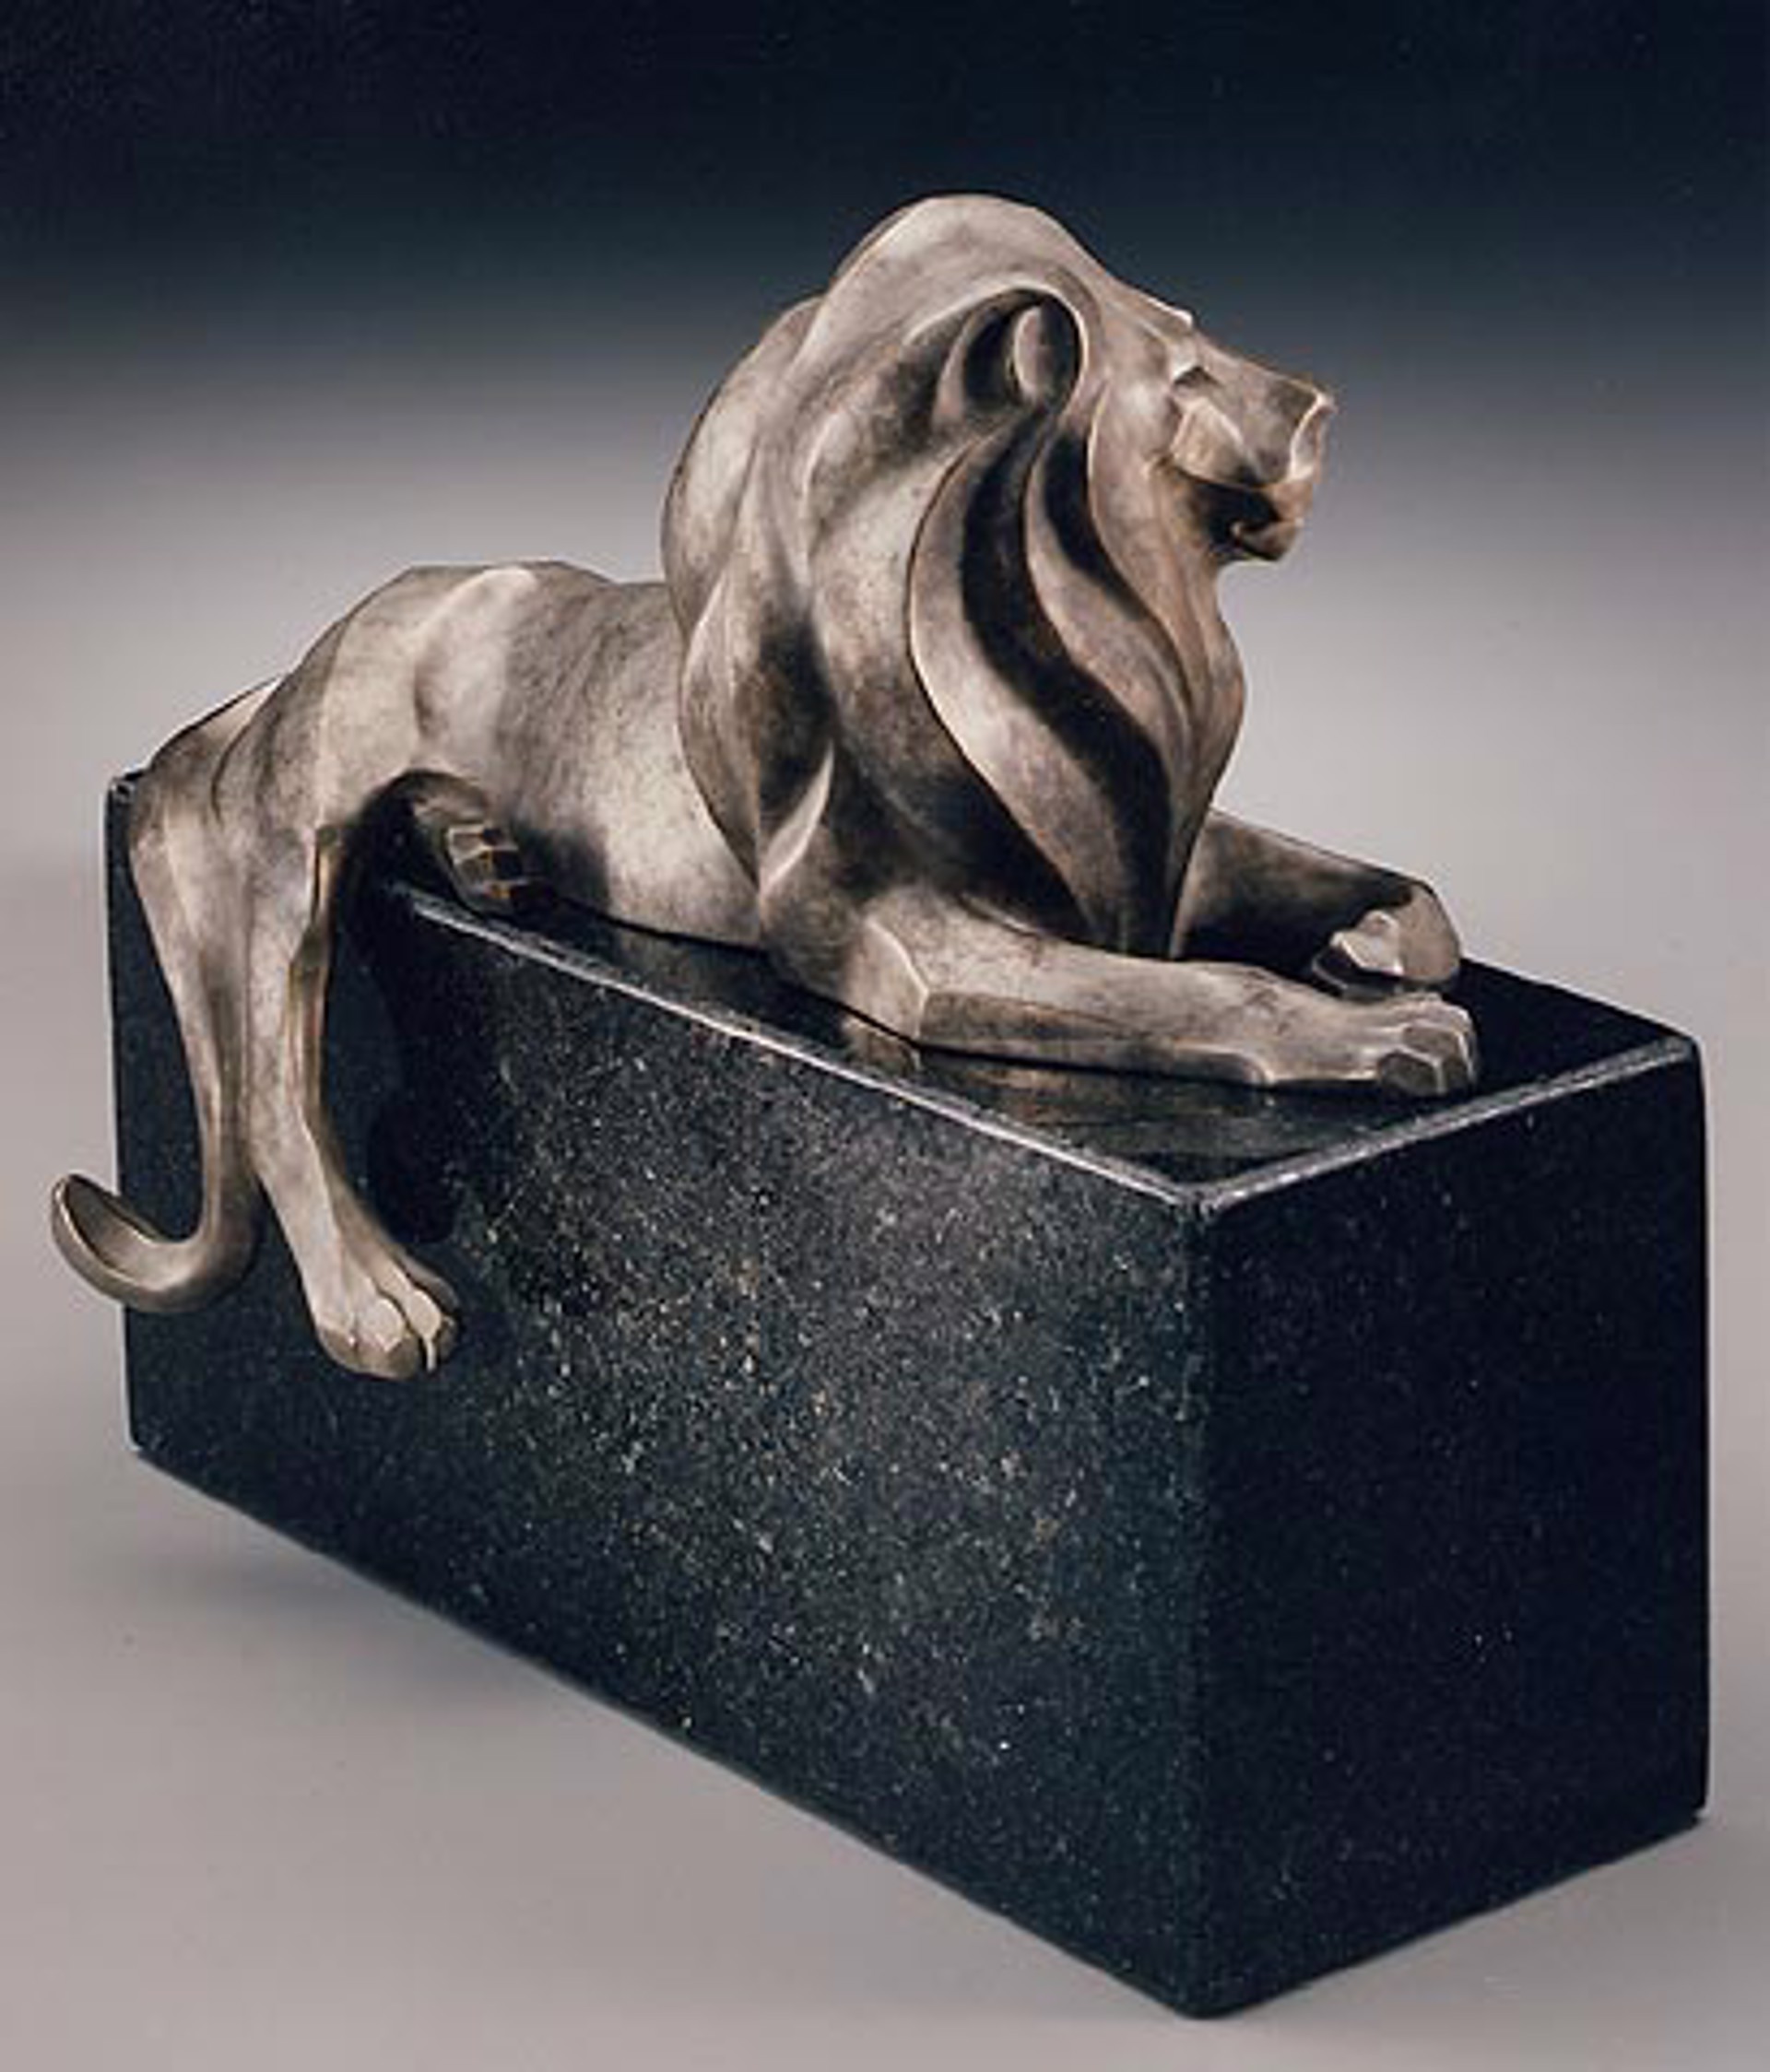 Stone Lion Maquette by Rosetta